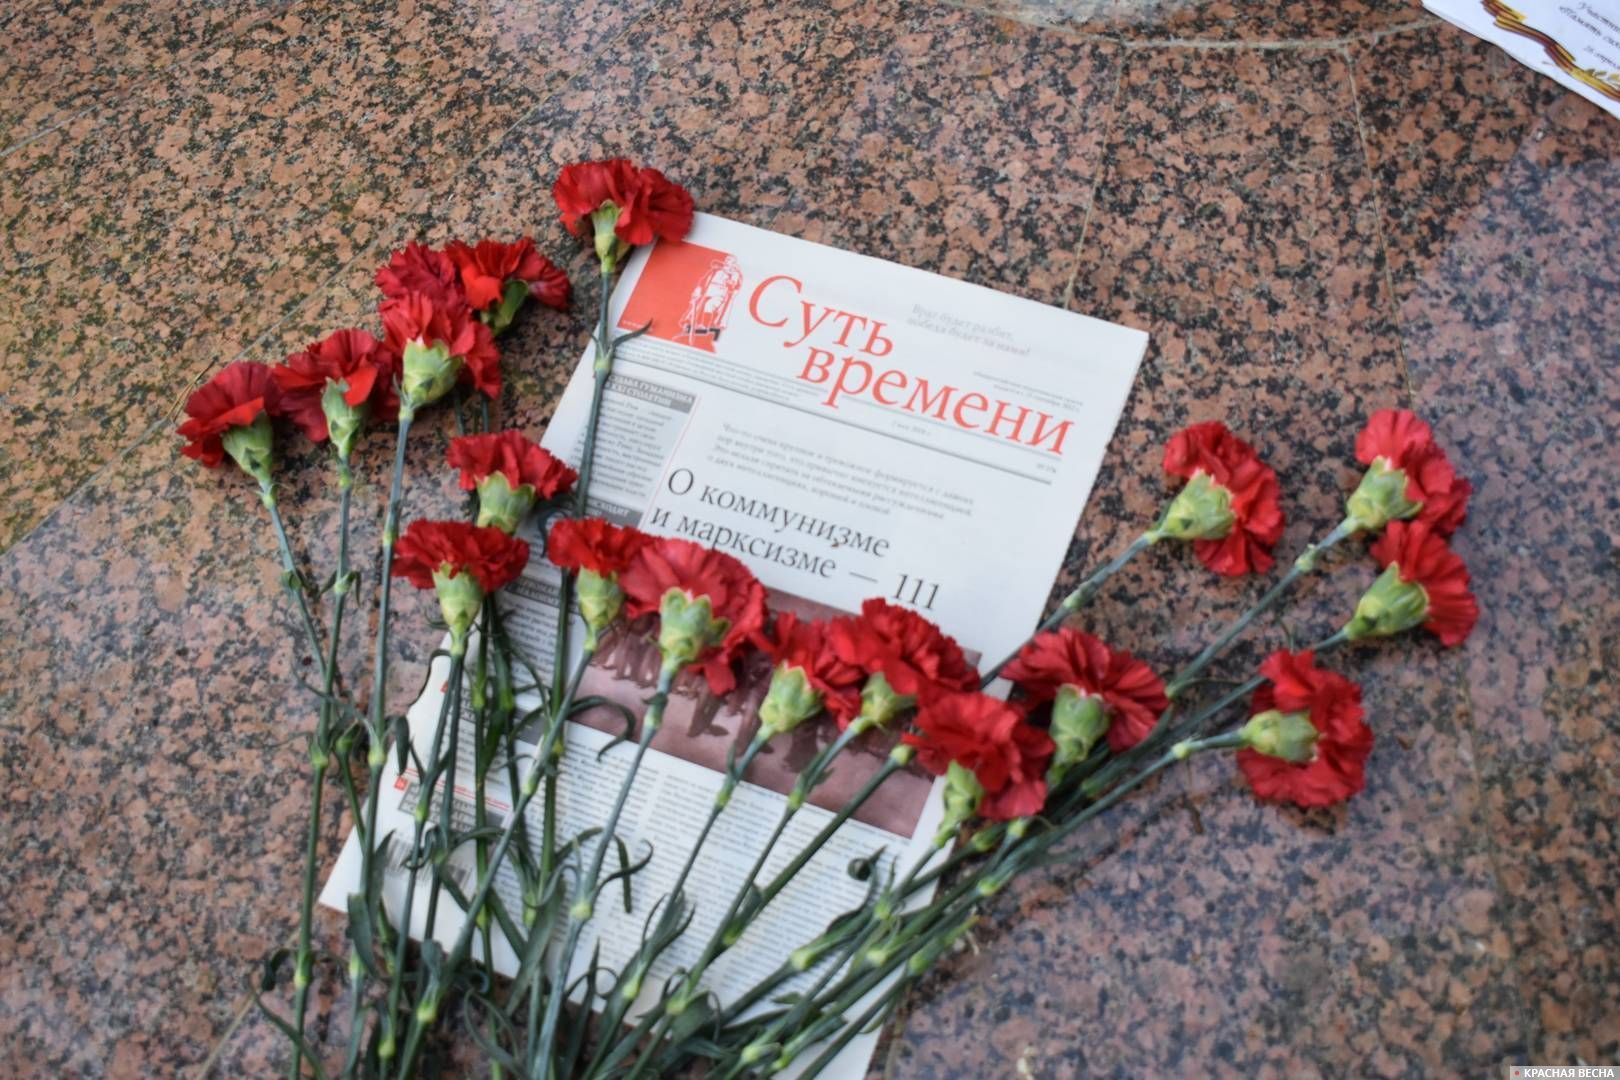 Возложение цветов у памятника военным журналистам, Брянск